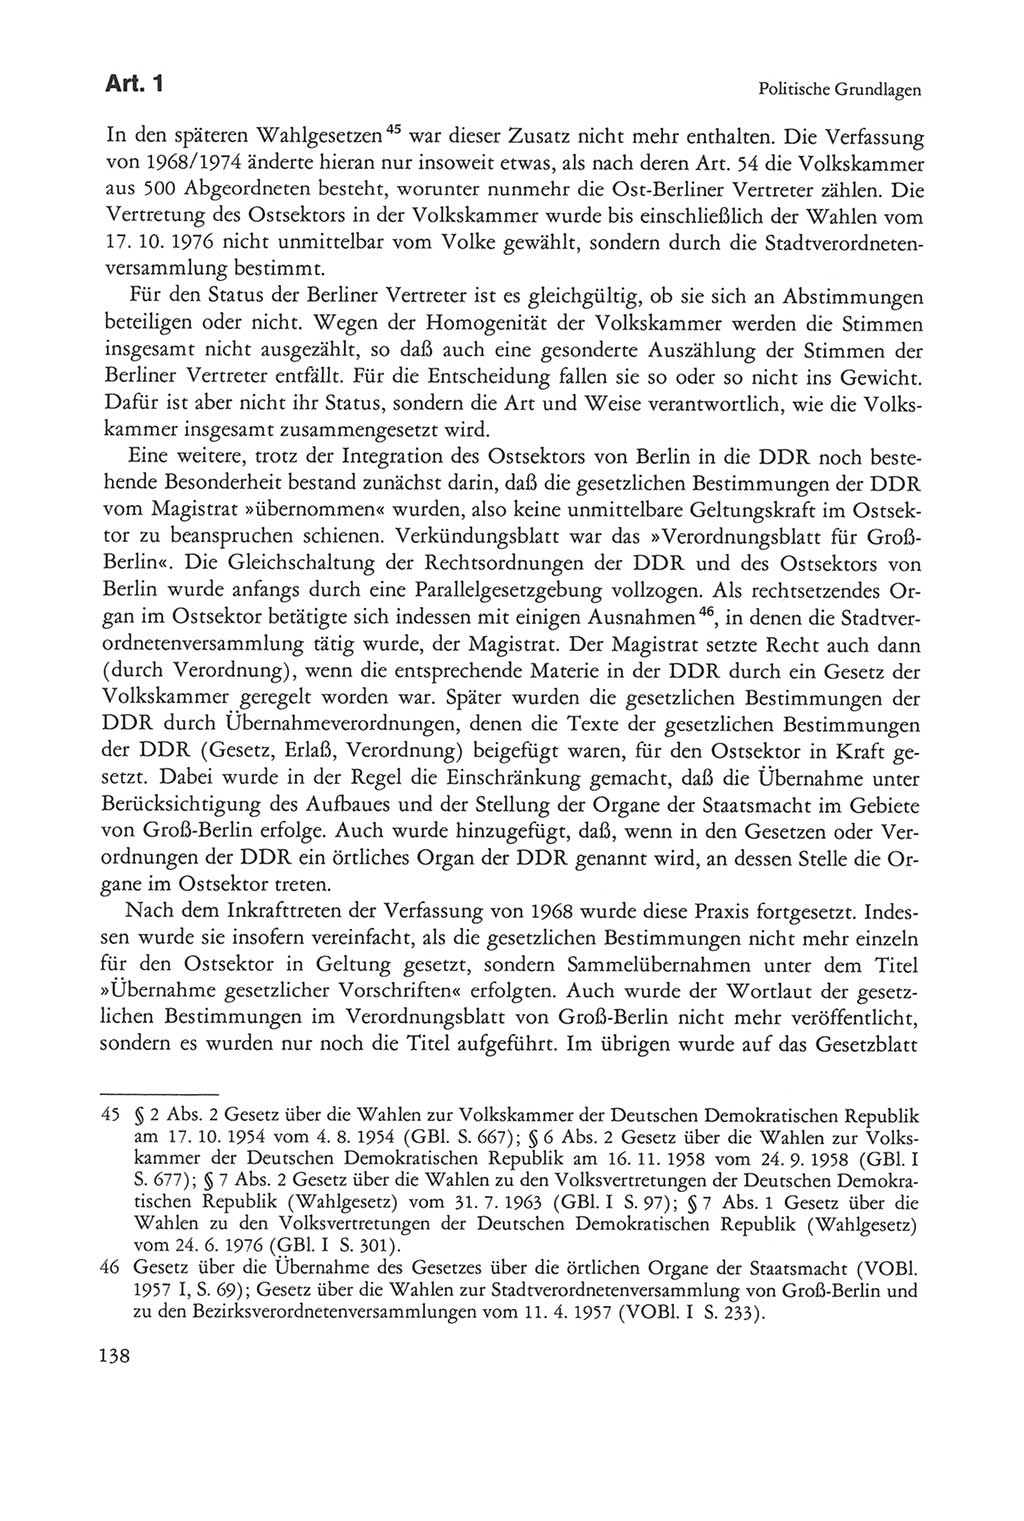 Die sozialistische Verfassung der Deutschen Demokratischen Republik (DDR), Kommentar 1982, Seite 138 (Soz. Verf. DDR Komm. 1982, S. 138)